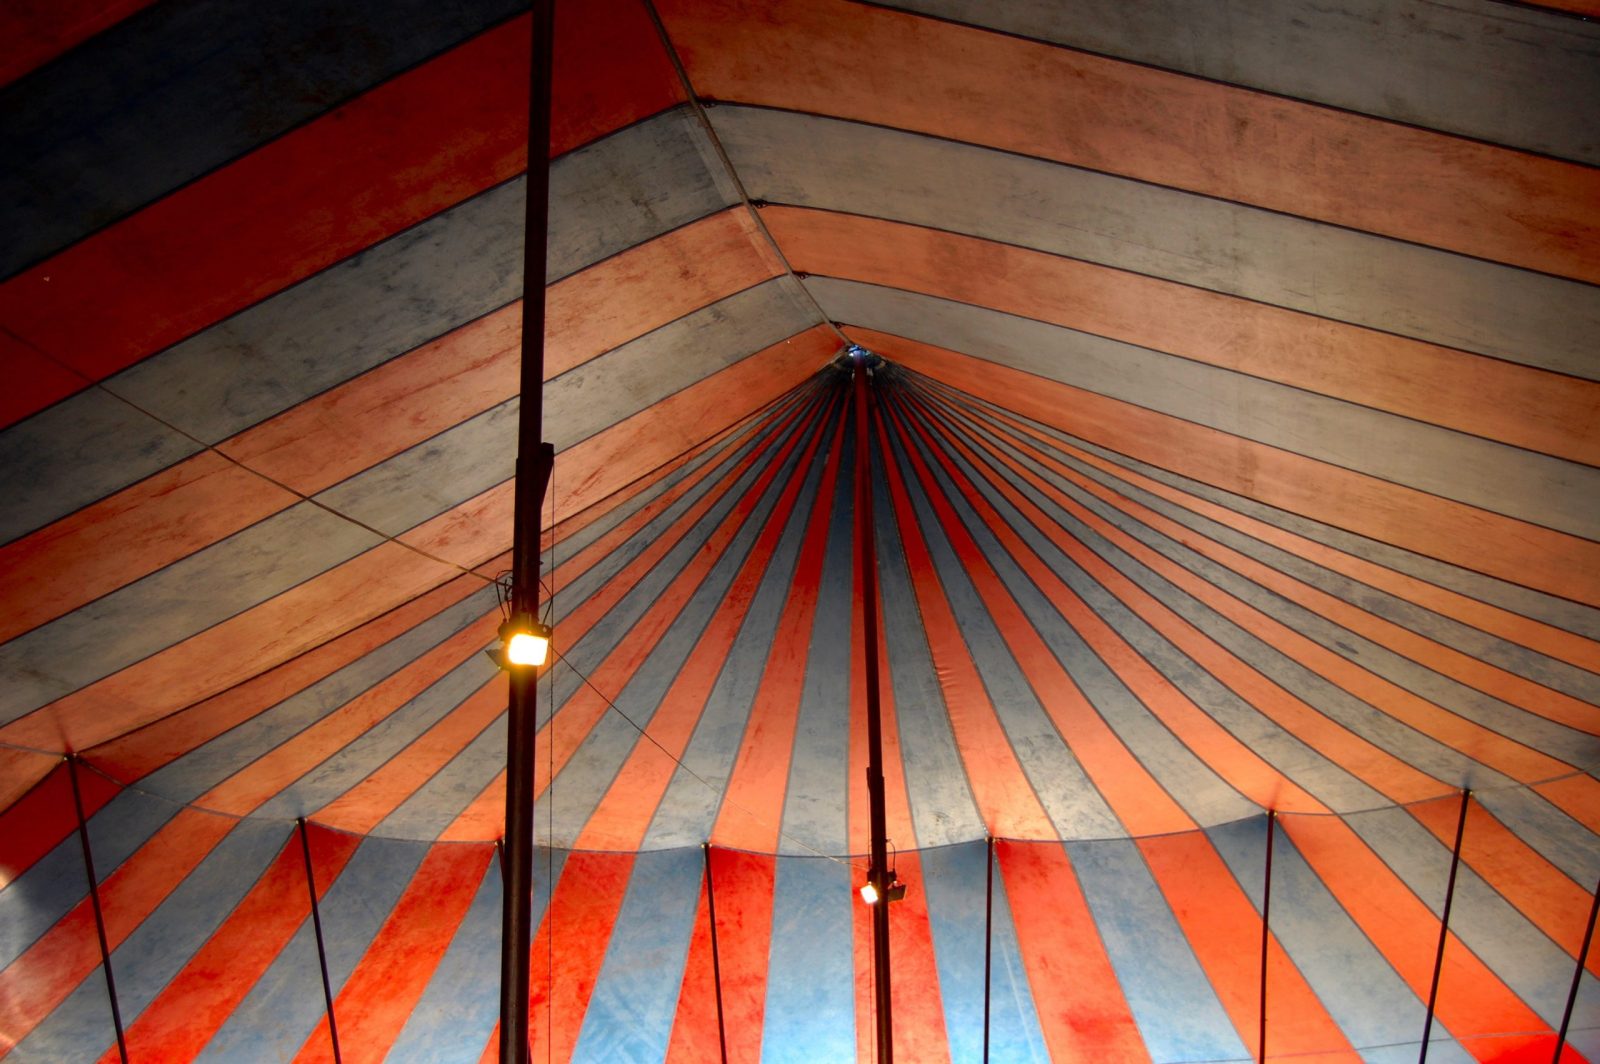 Big Tent